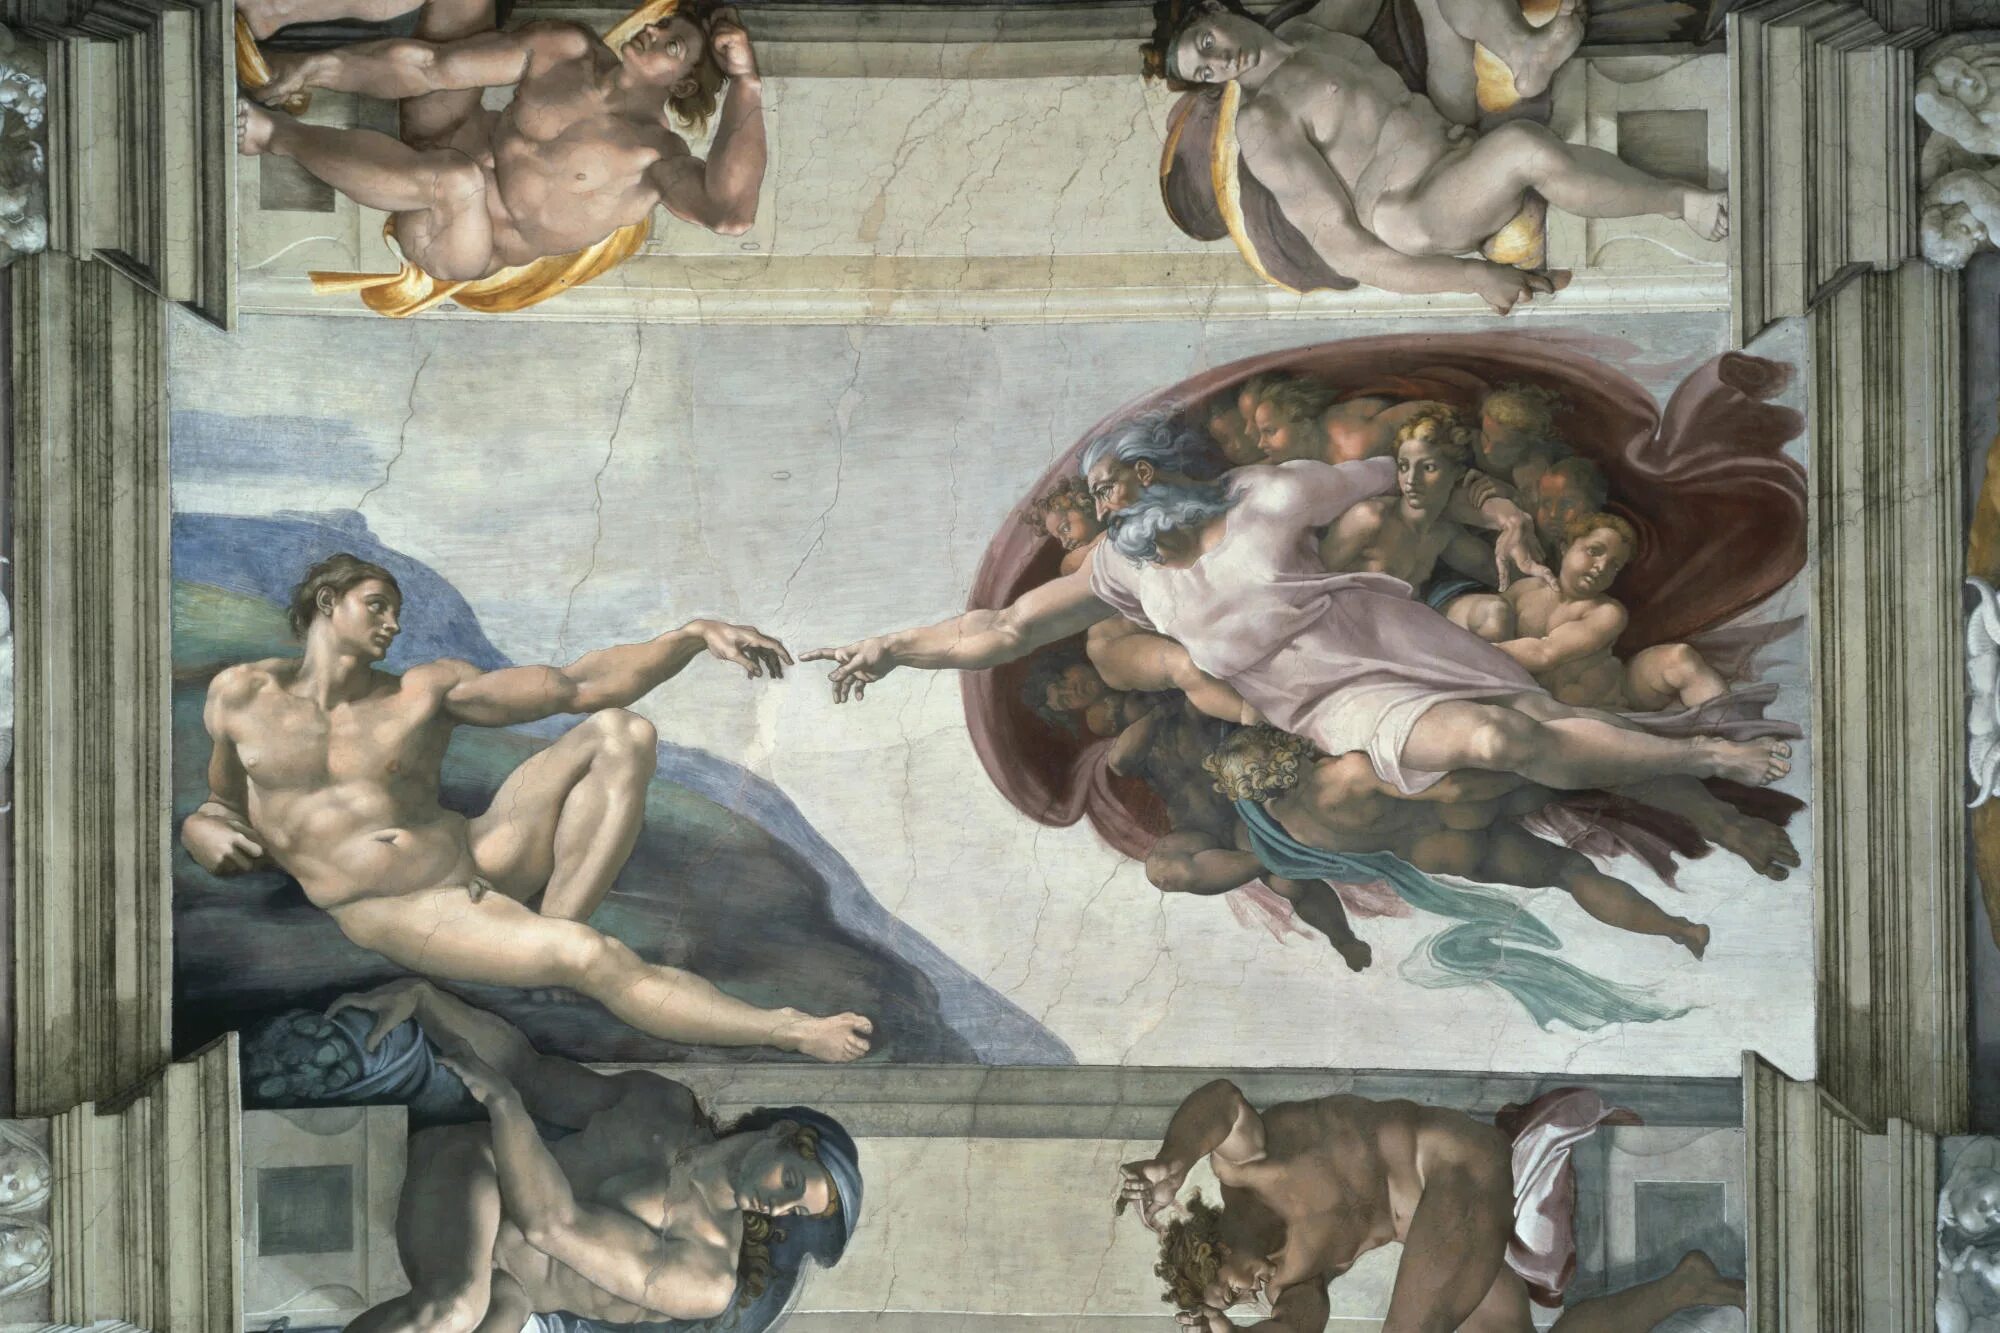 Перед тобой четыре произведения искусства посвященные еде. Микеланджело Буонарроти Сотворение Адама. Микеланджело, «Сотворение Адама», 1508–1512. Микеланджело фрески Сикстинской капеллы. Сотворение Адама картина Микеланджело.